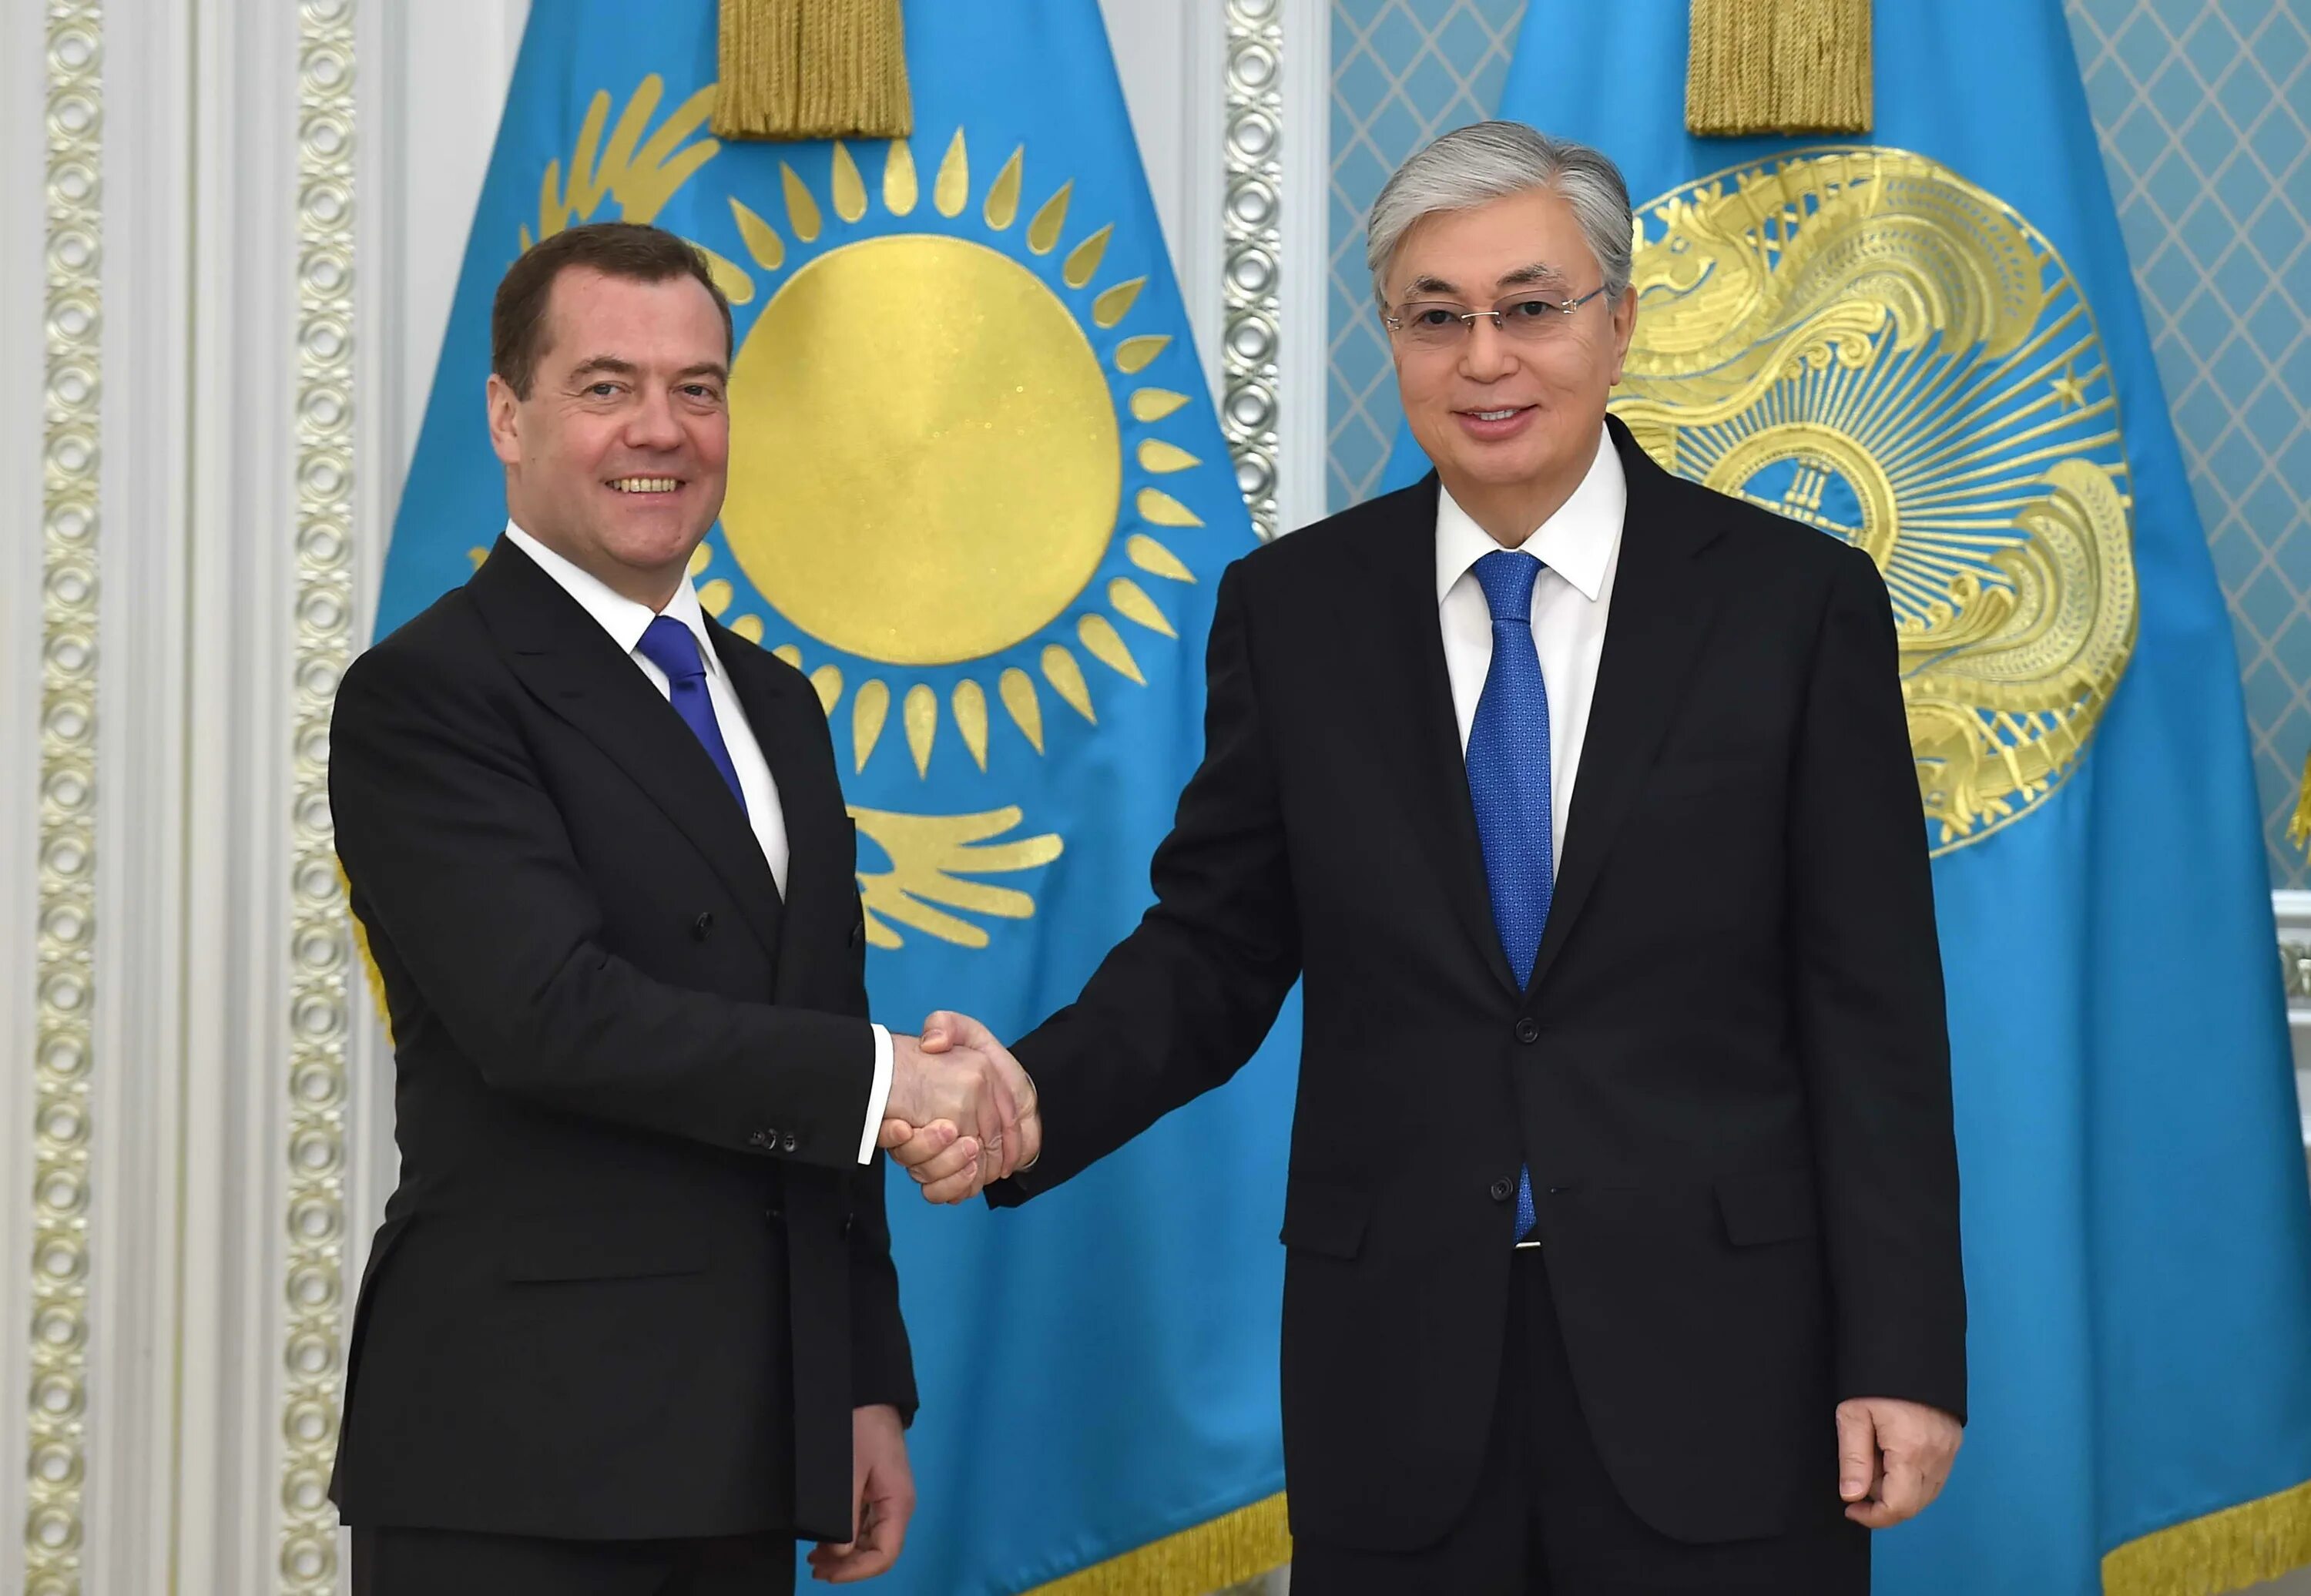 Президентская казахстана. Касым-Жомарт Токаев и Назарбаев. Токаев и Назарбаев.